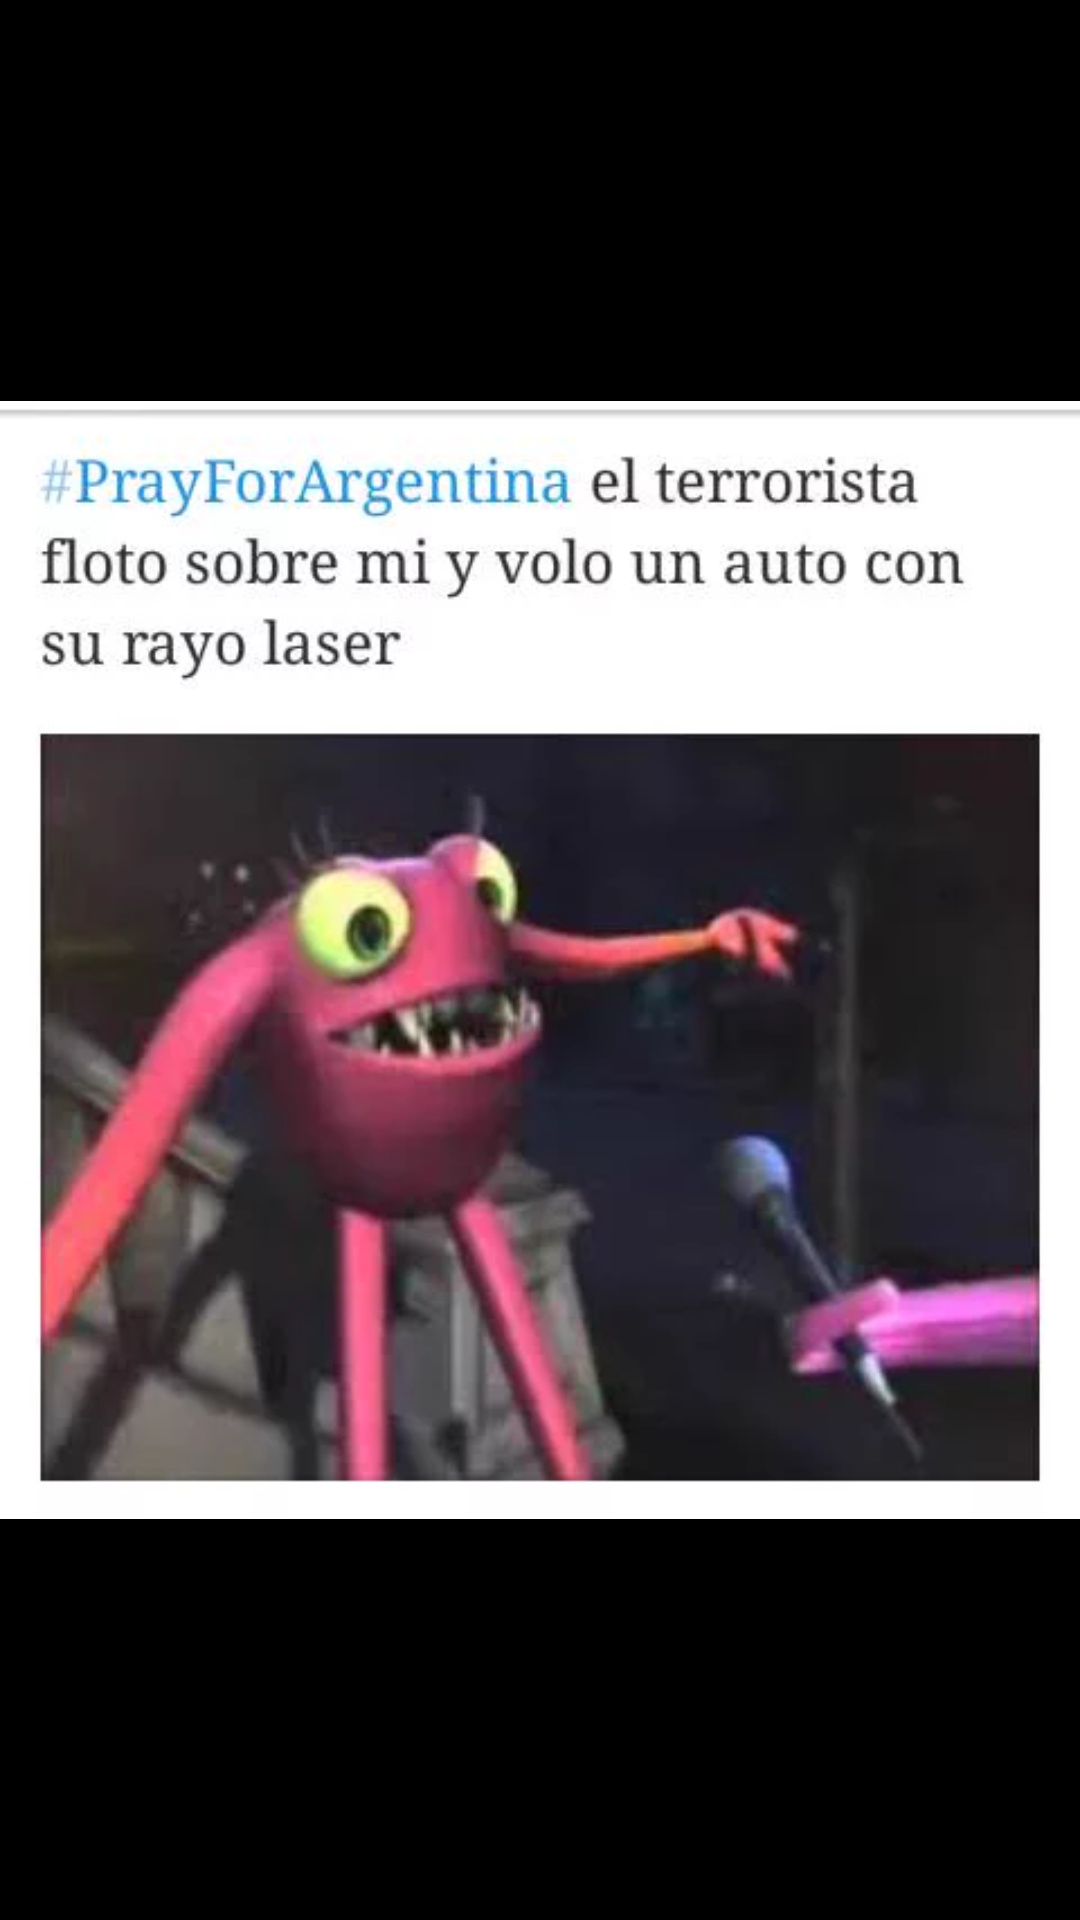 Atentado en argentina y todos tipo - meme